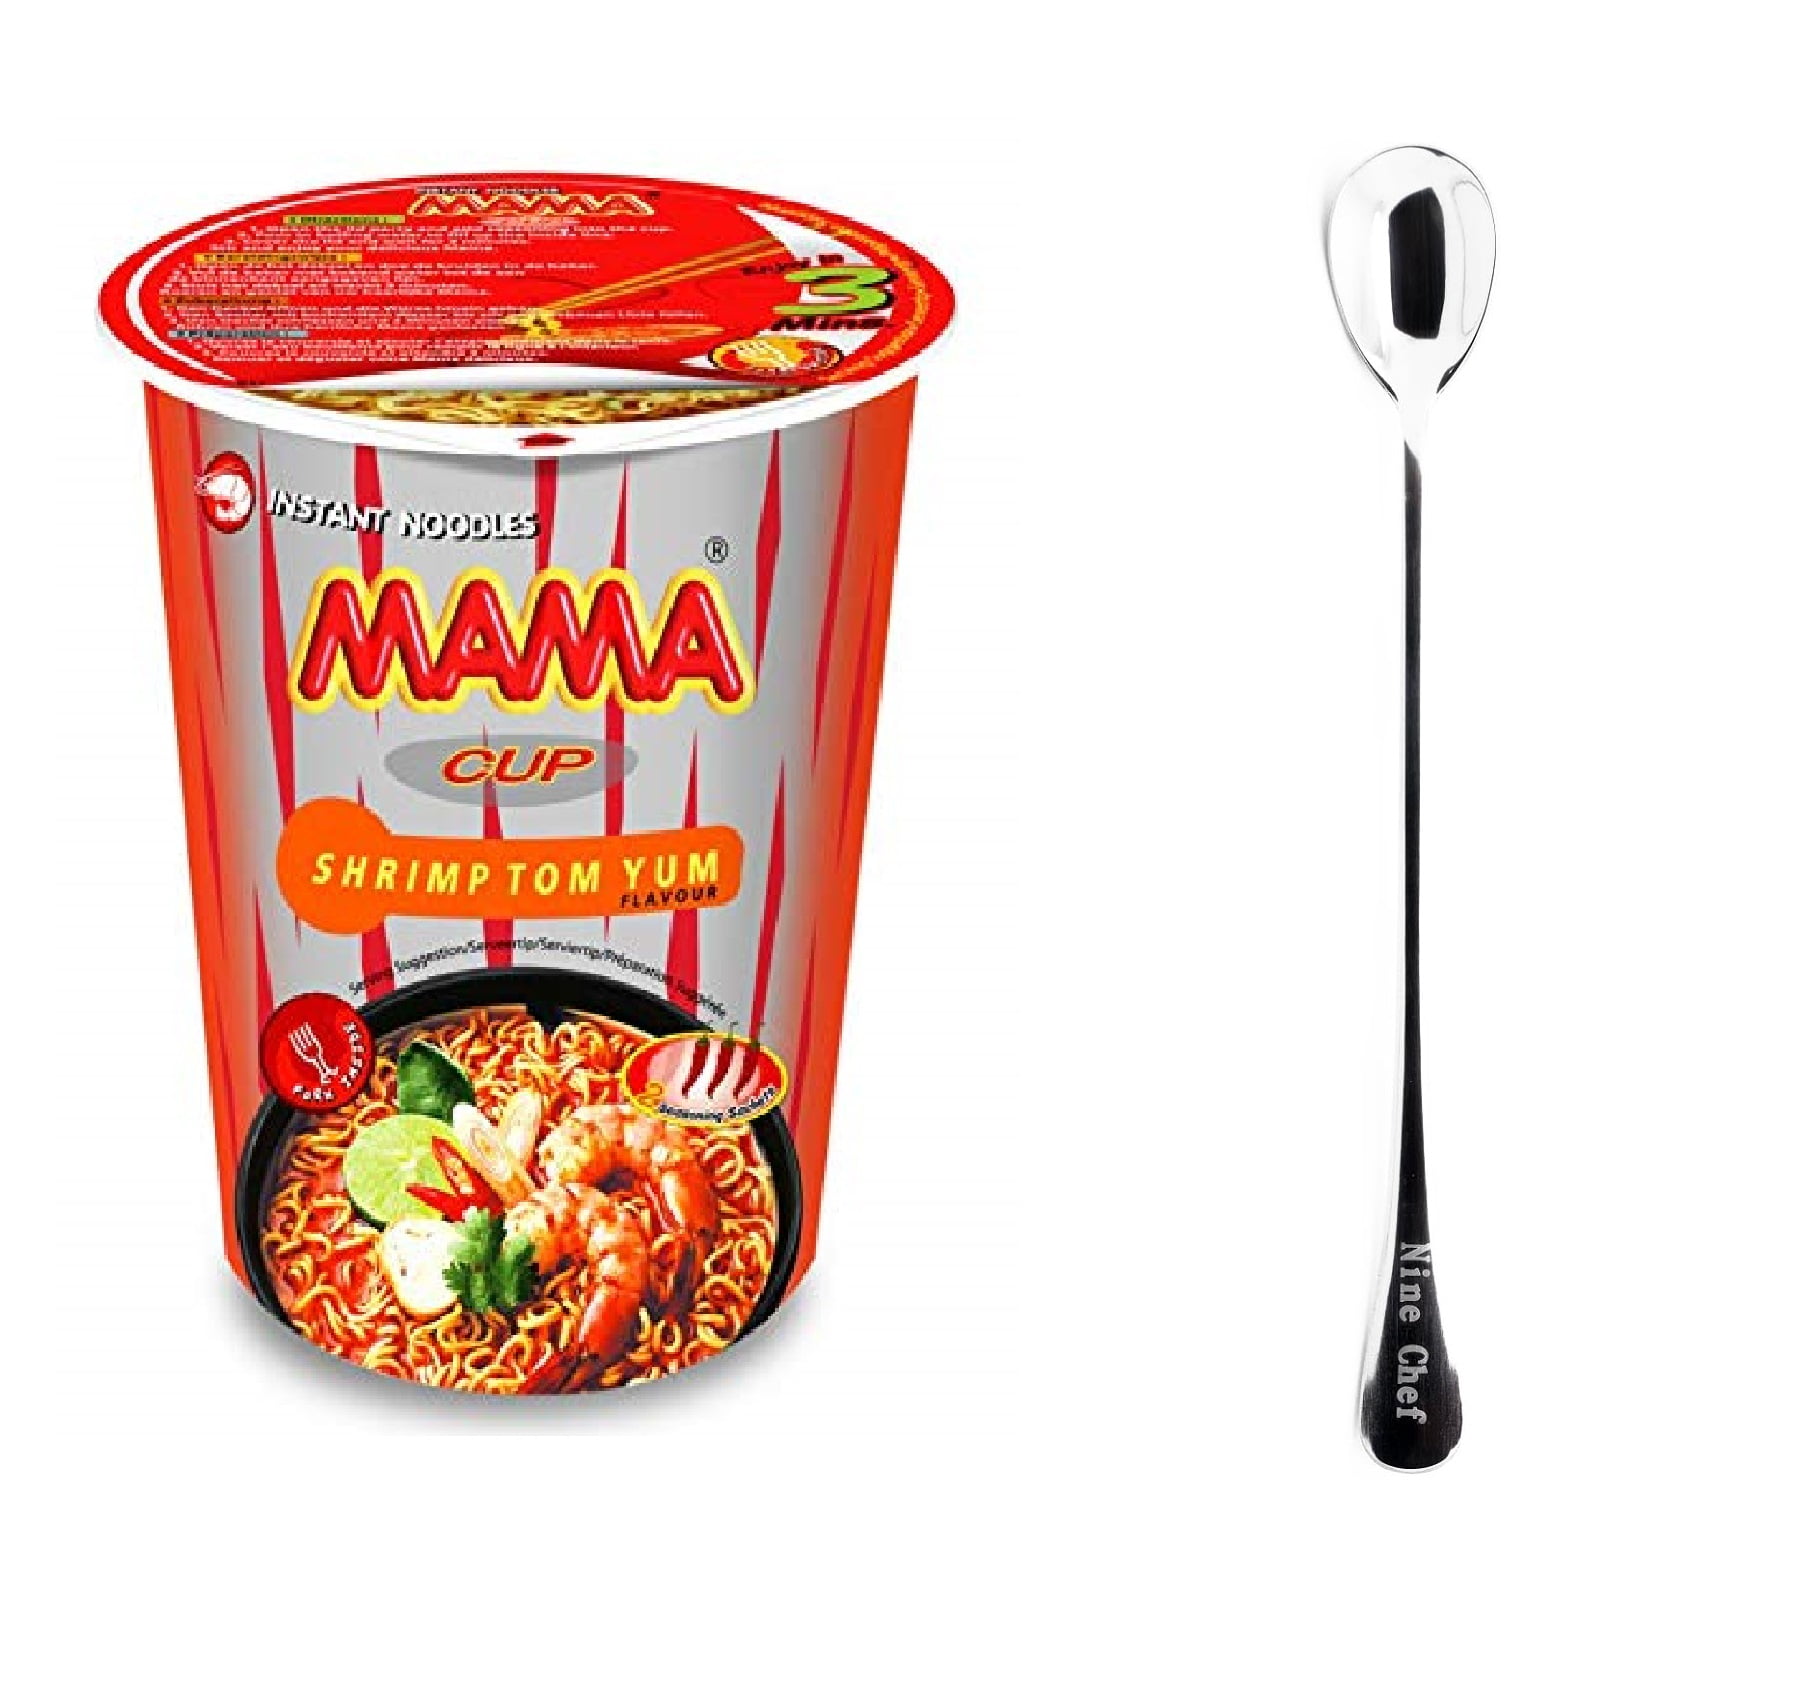 Mama Thai Instant Noodles: Shrimp Tom Yum